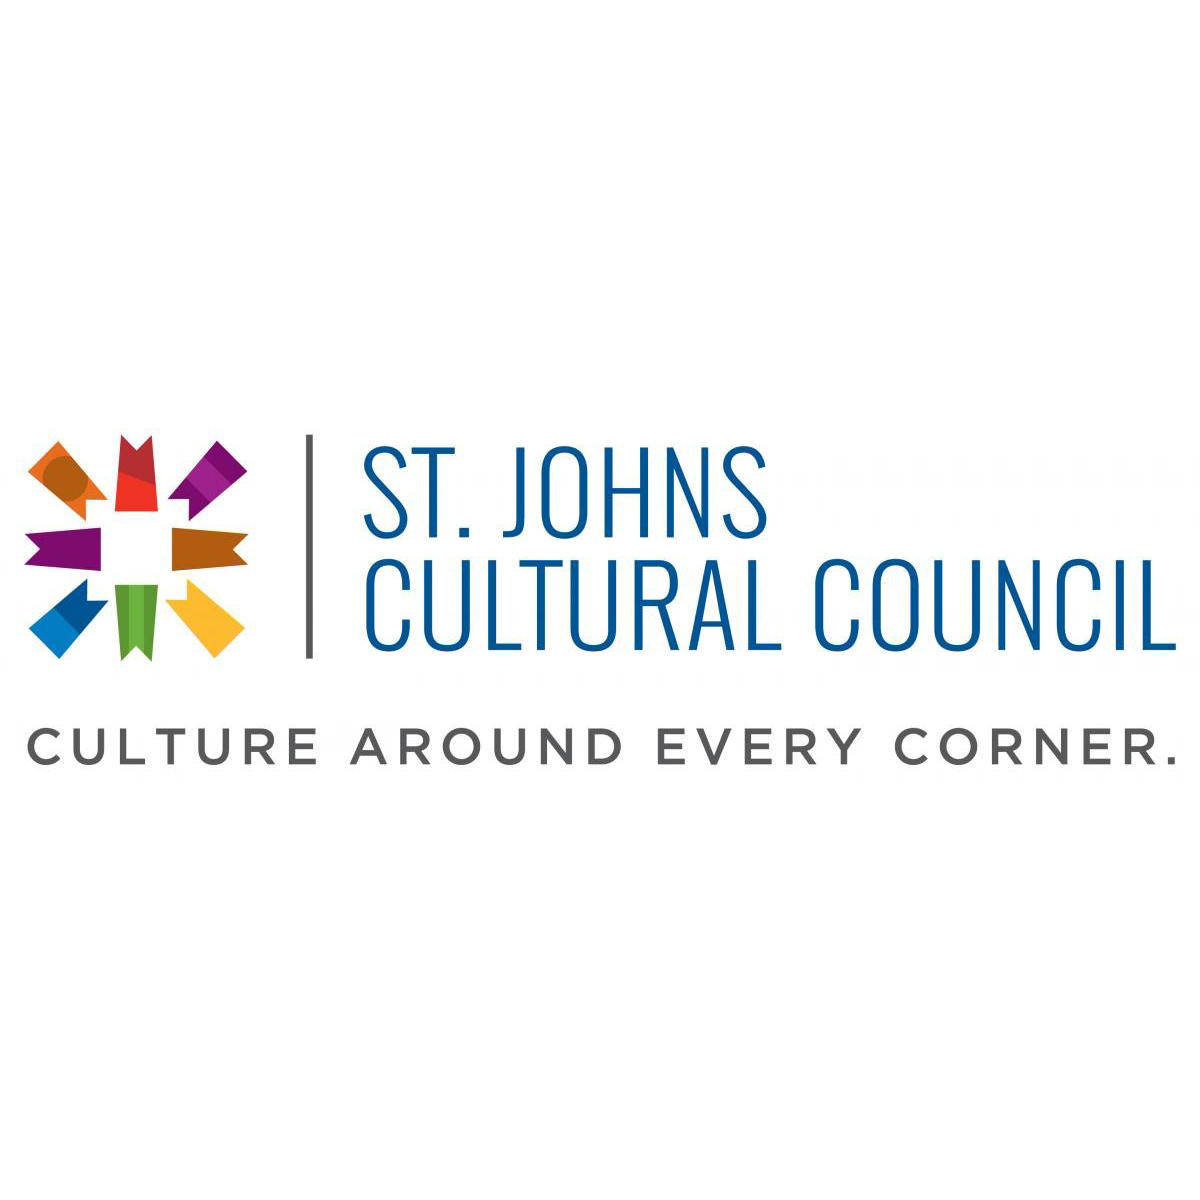 St. Johns Cultural Council